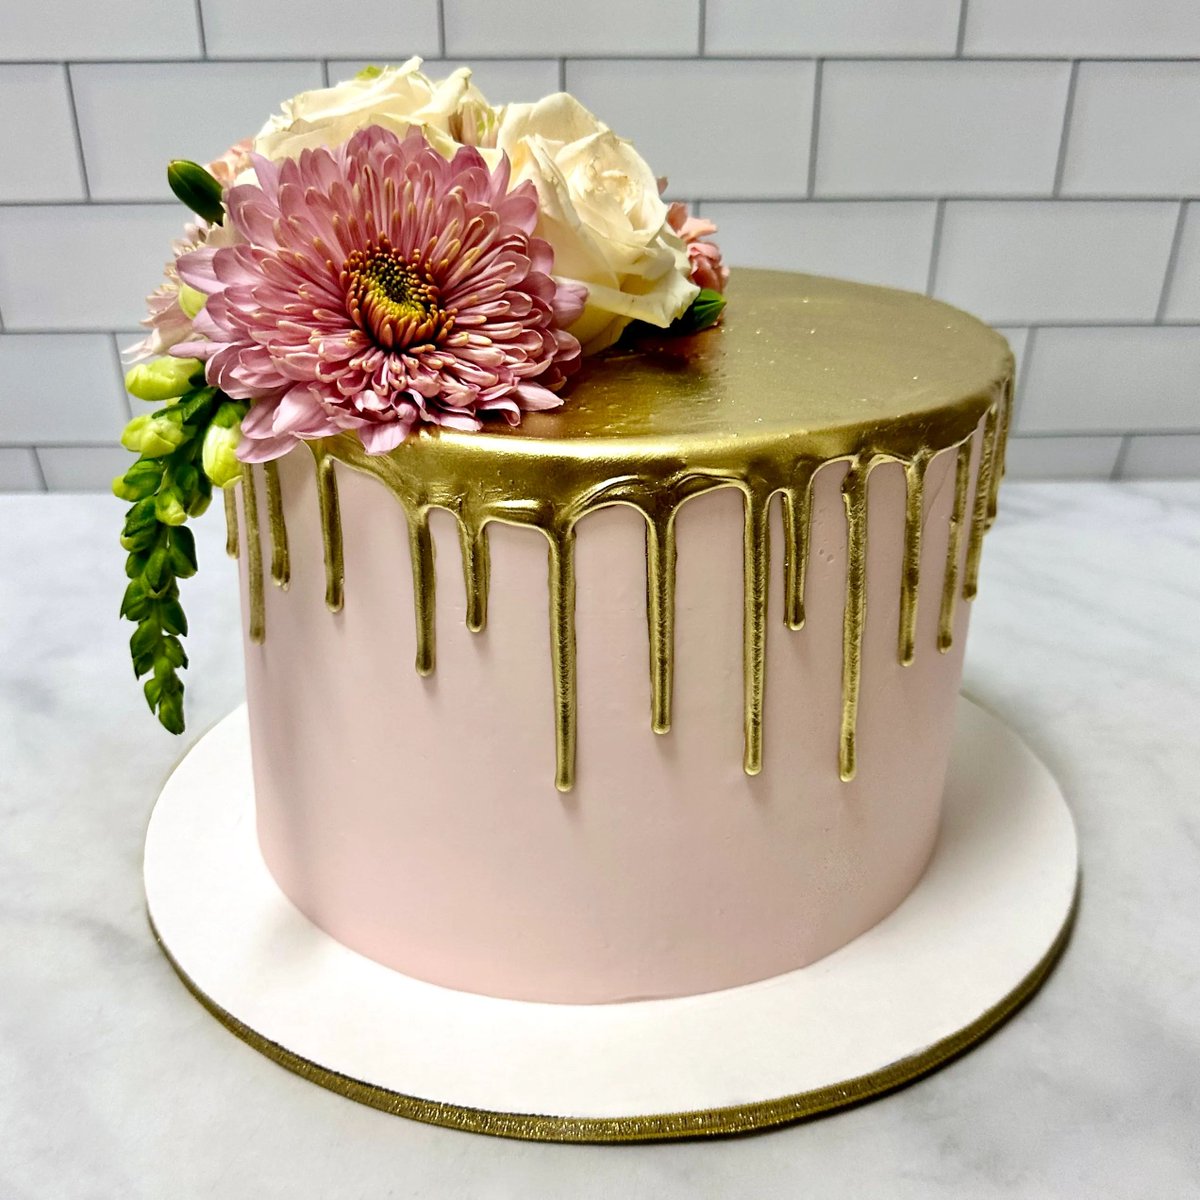 🌟🌺 Hey there beautiful!

#dripcake #kupcakekitchen #wantcake #golddrip #golddripcake #dripcakes #dripcakelove #dripcakeideas #beautifulcakes #cakeforlife #cakeforhim #cakeforher #cakeforwomen #cakeformen #cakefordad #cakeformom #cakeforhusband #cakeforwife #santaclarita